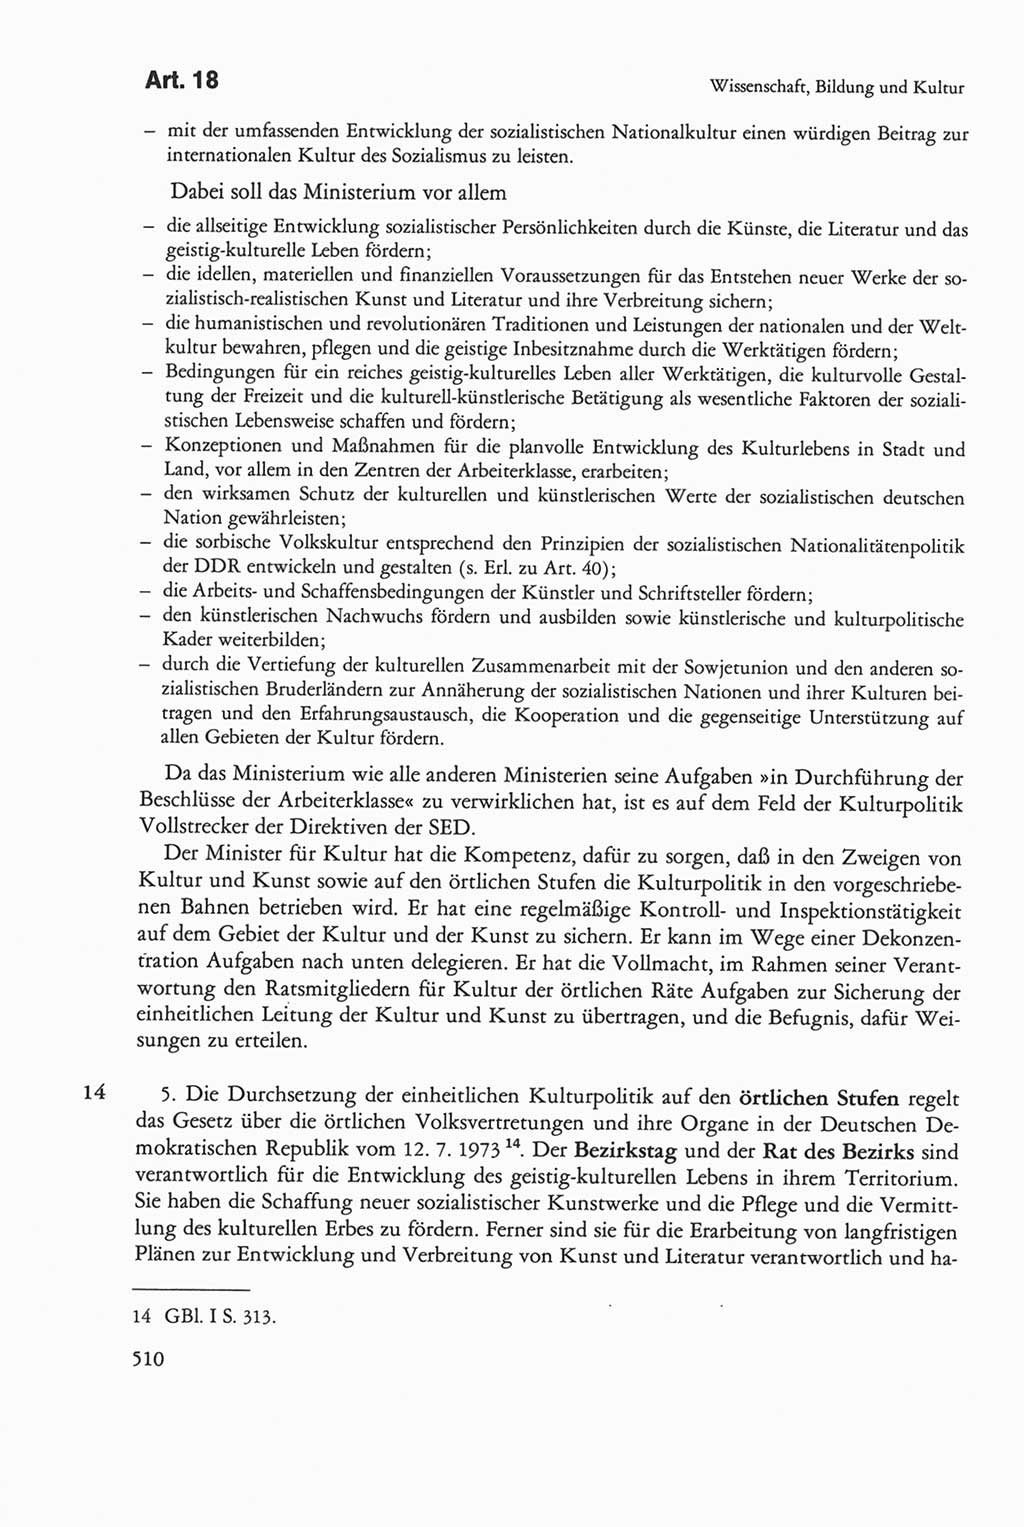 Die sozialistische Verfassung der Deutschen Demokratischen Republik (DDR), Kommentar 1982, Seite 510 (Soz. Verf. DDR Komm. 1982, S. 510)